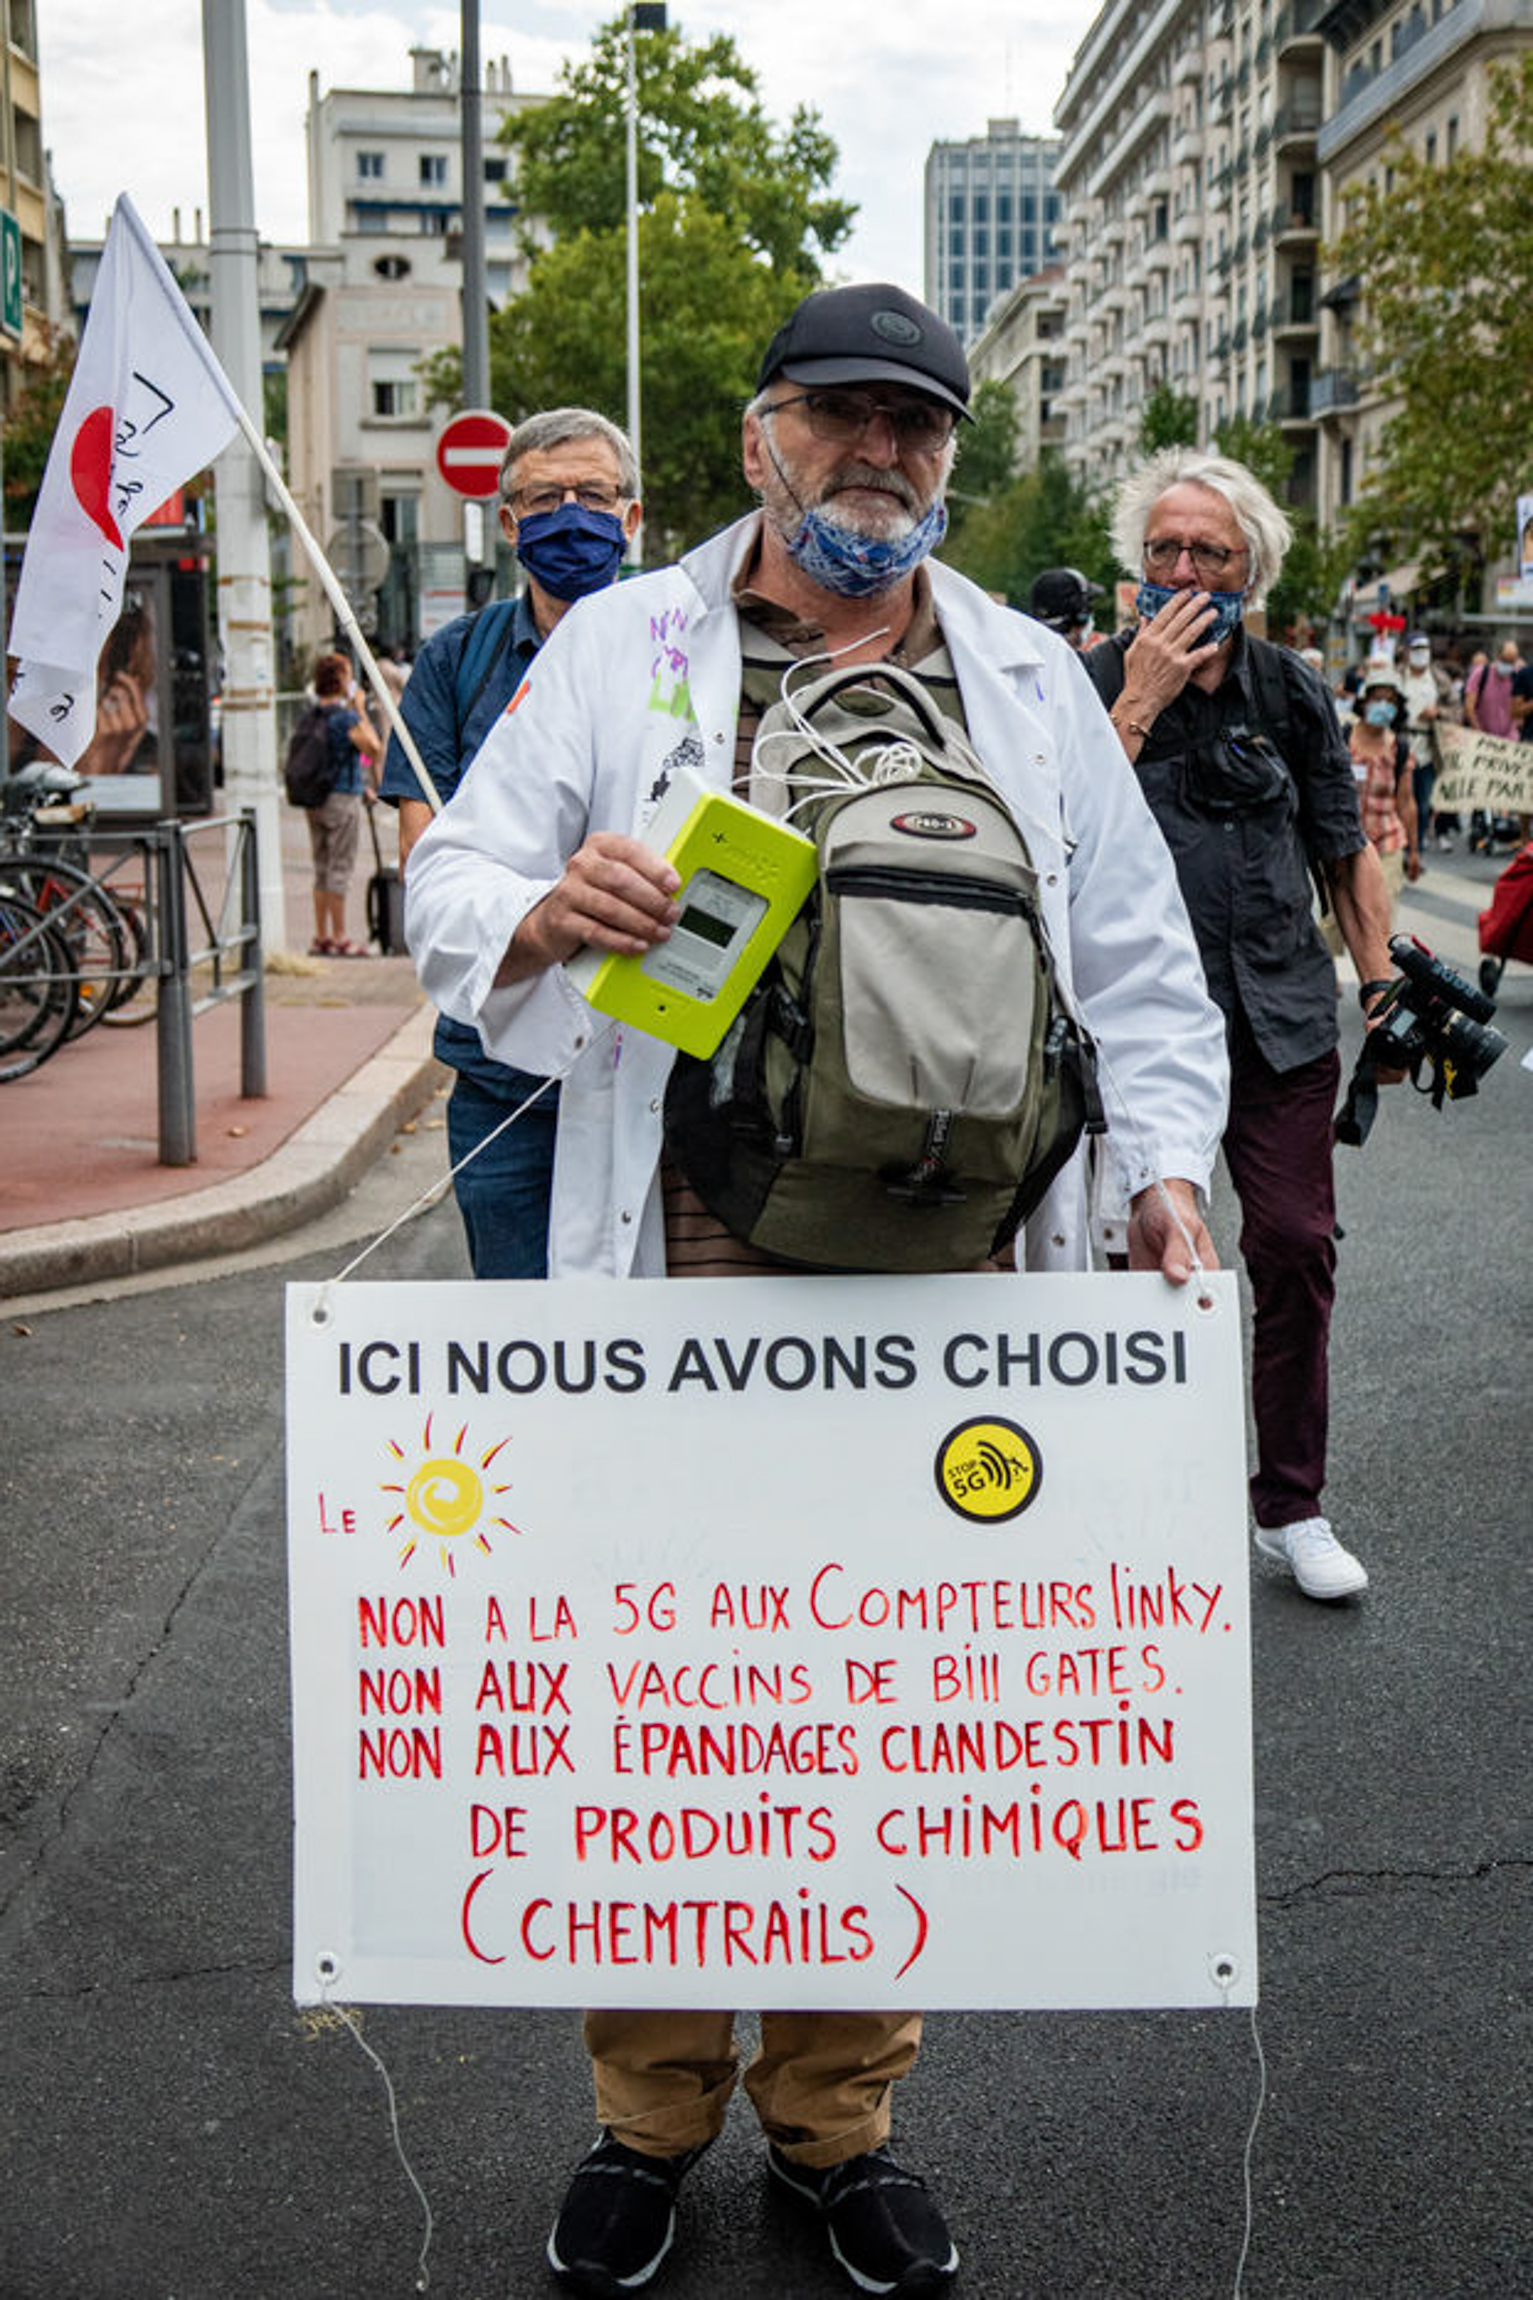 Manifestazione contro la 5G a Lione. Sul cartello: “No al 5G e ai contatori Linky, no ai vaccini di Bill Gates, no alle Scie chimiche, l'irrorazione clandestina di prodotti chimici”. Lione, Francia, 19 settembre 2020.